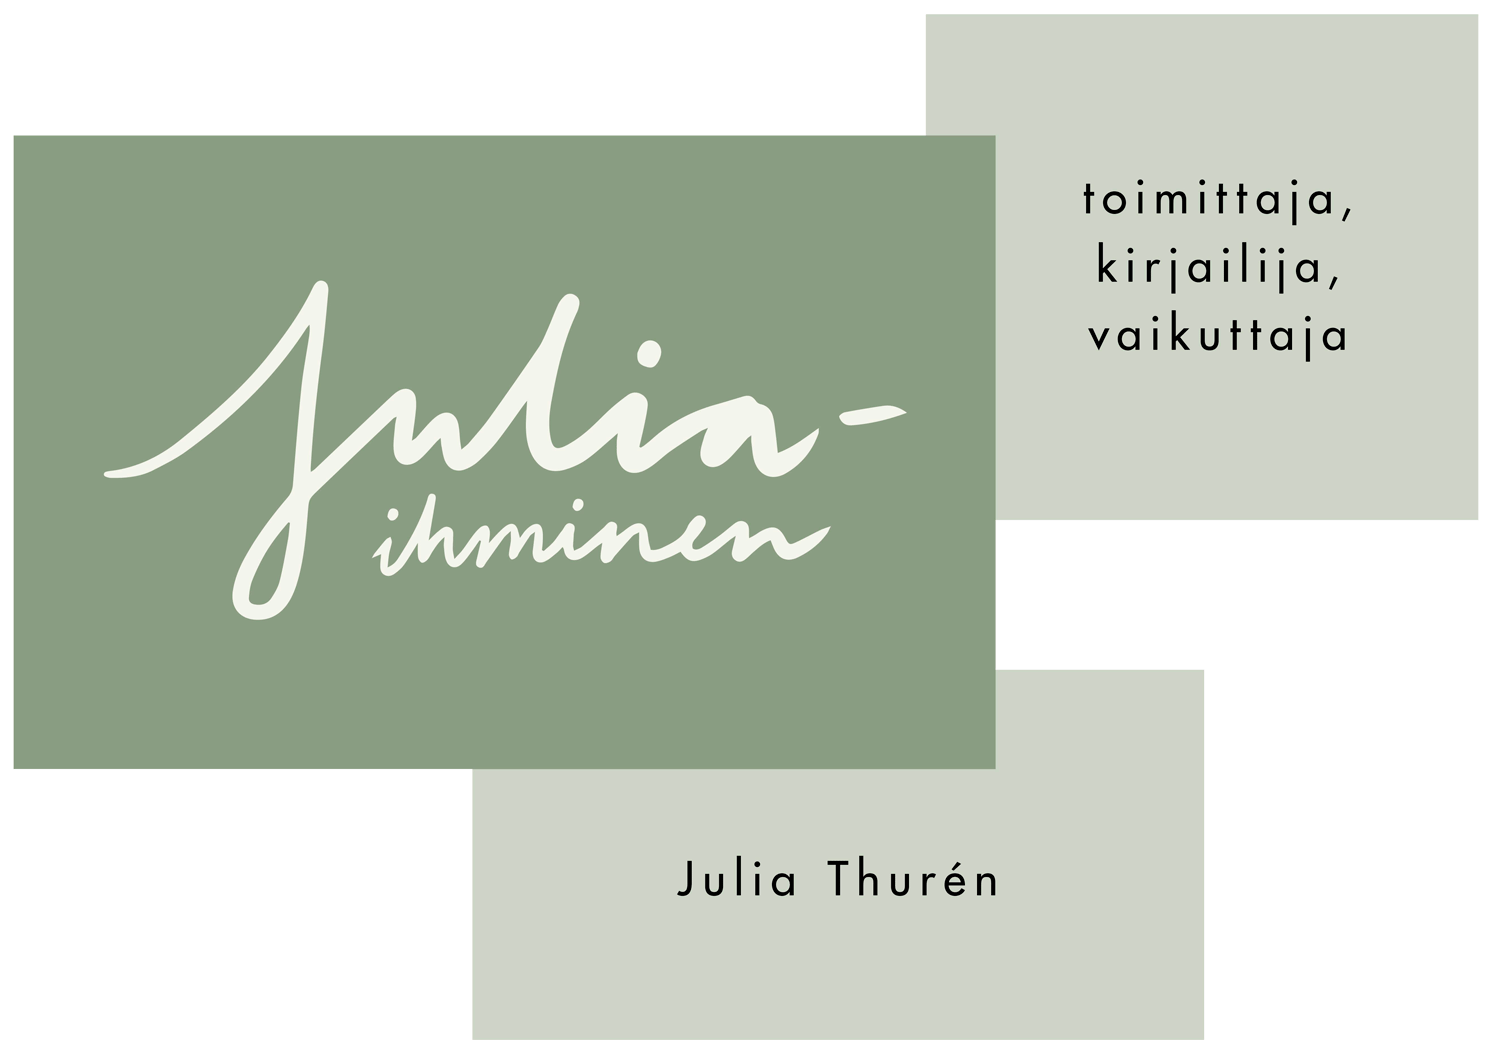 Julia Thurén - Juliaihminen